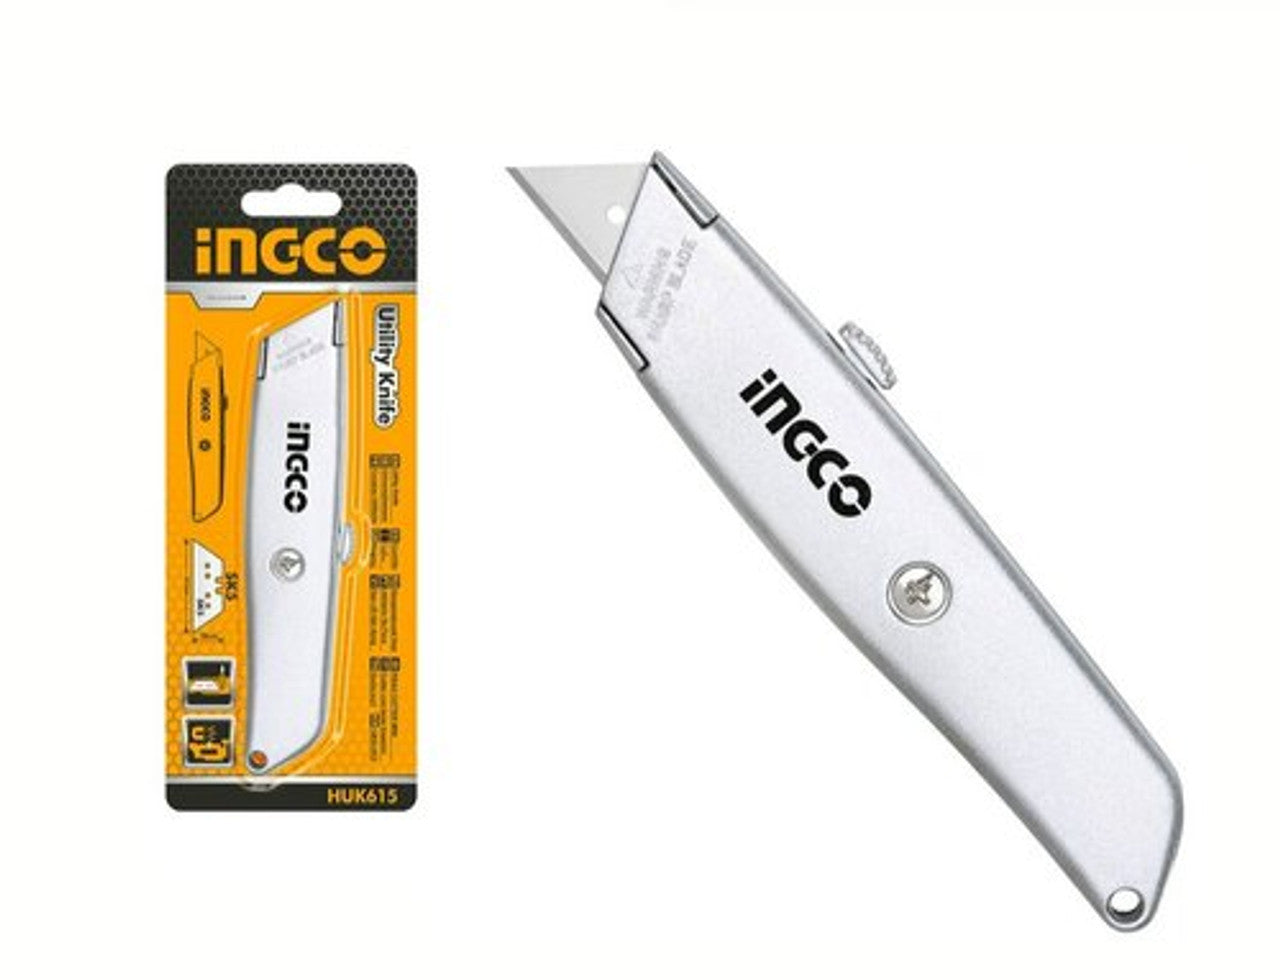 INGCO Knife